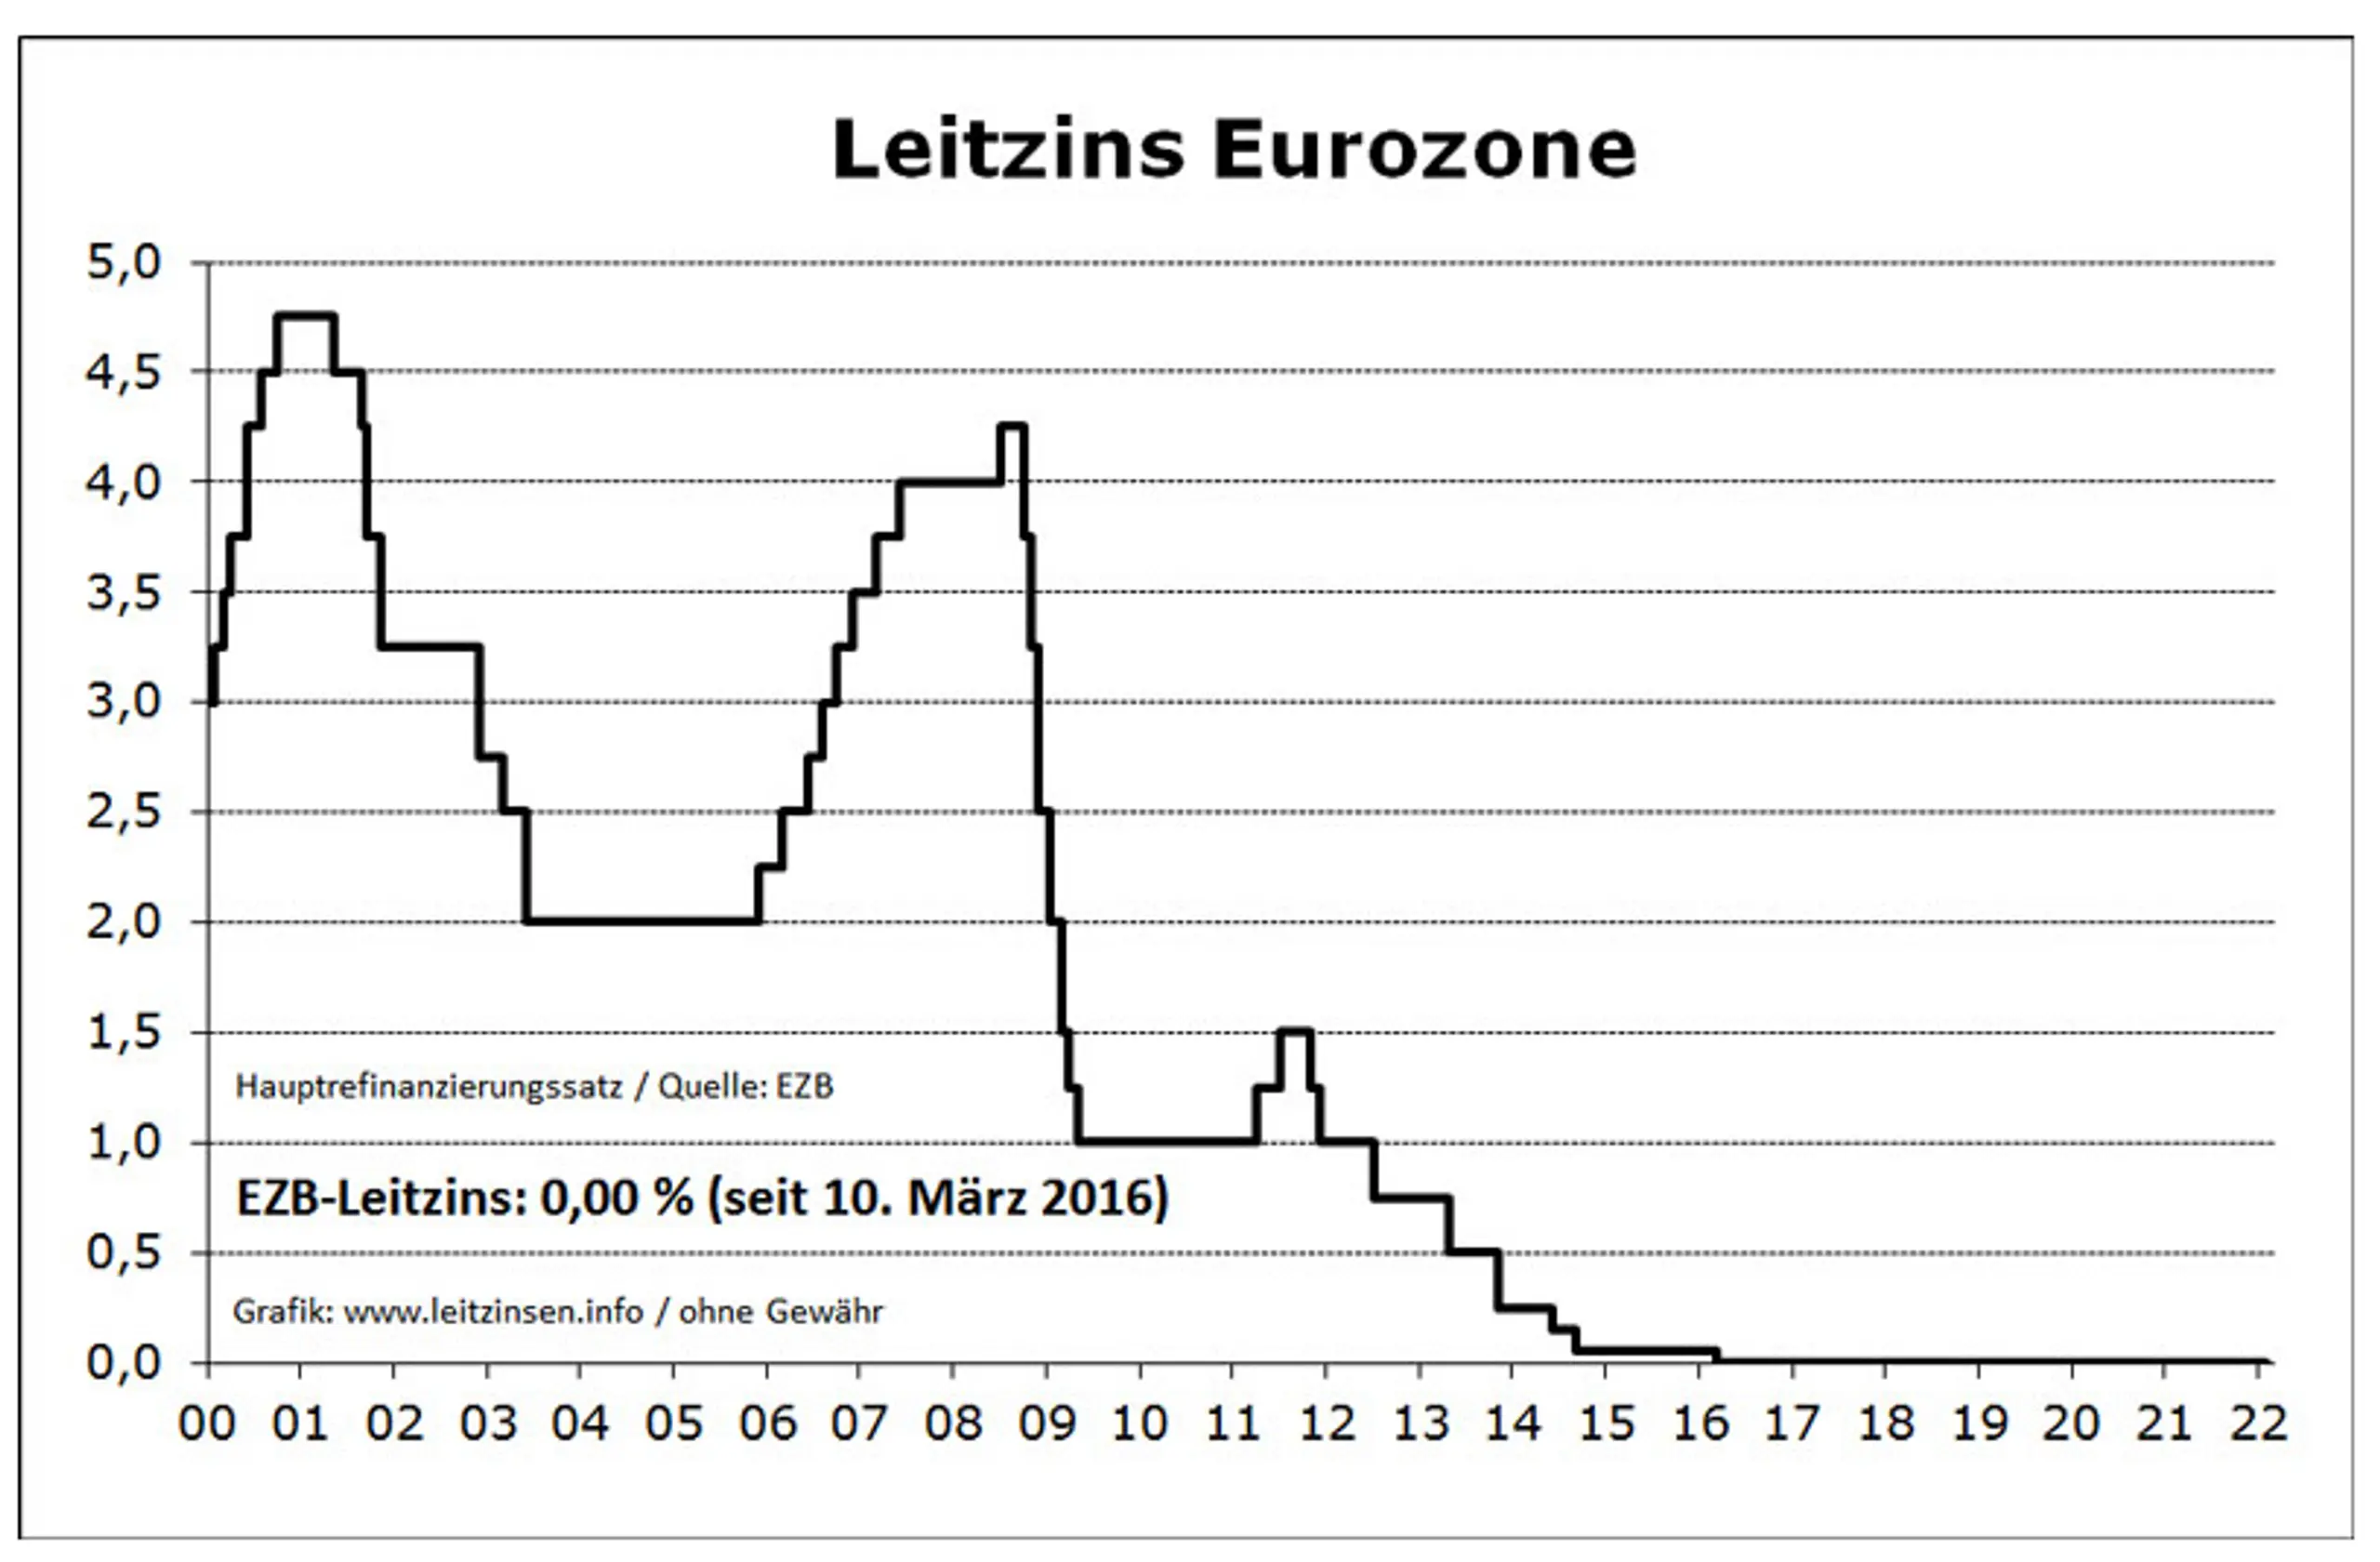 Entwicklung der Leitzinsen der EZB seit dem Jahr 2000